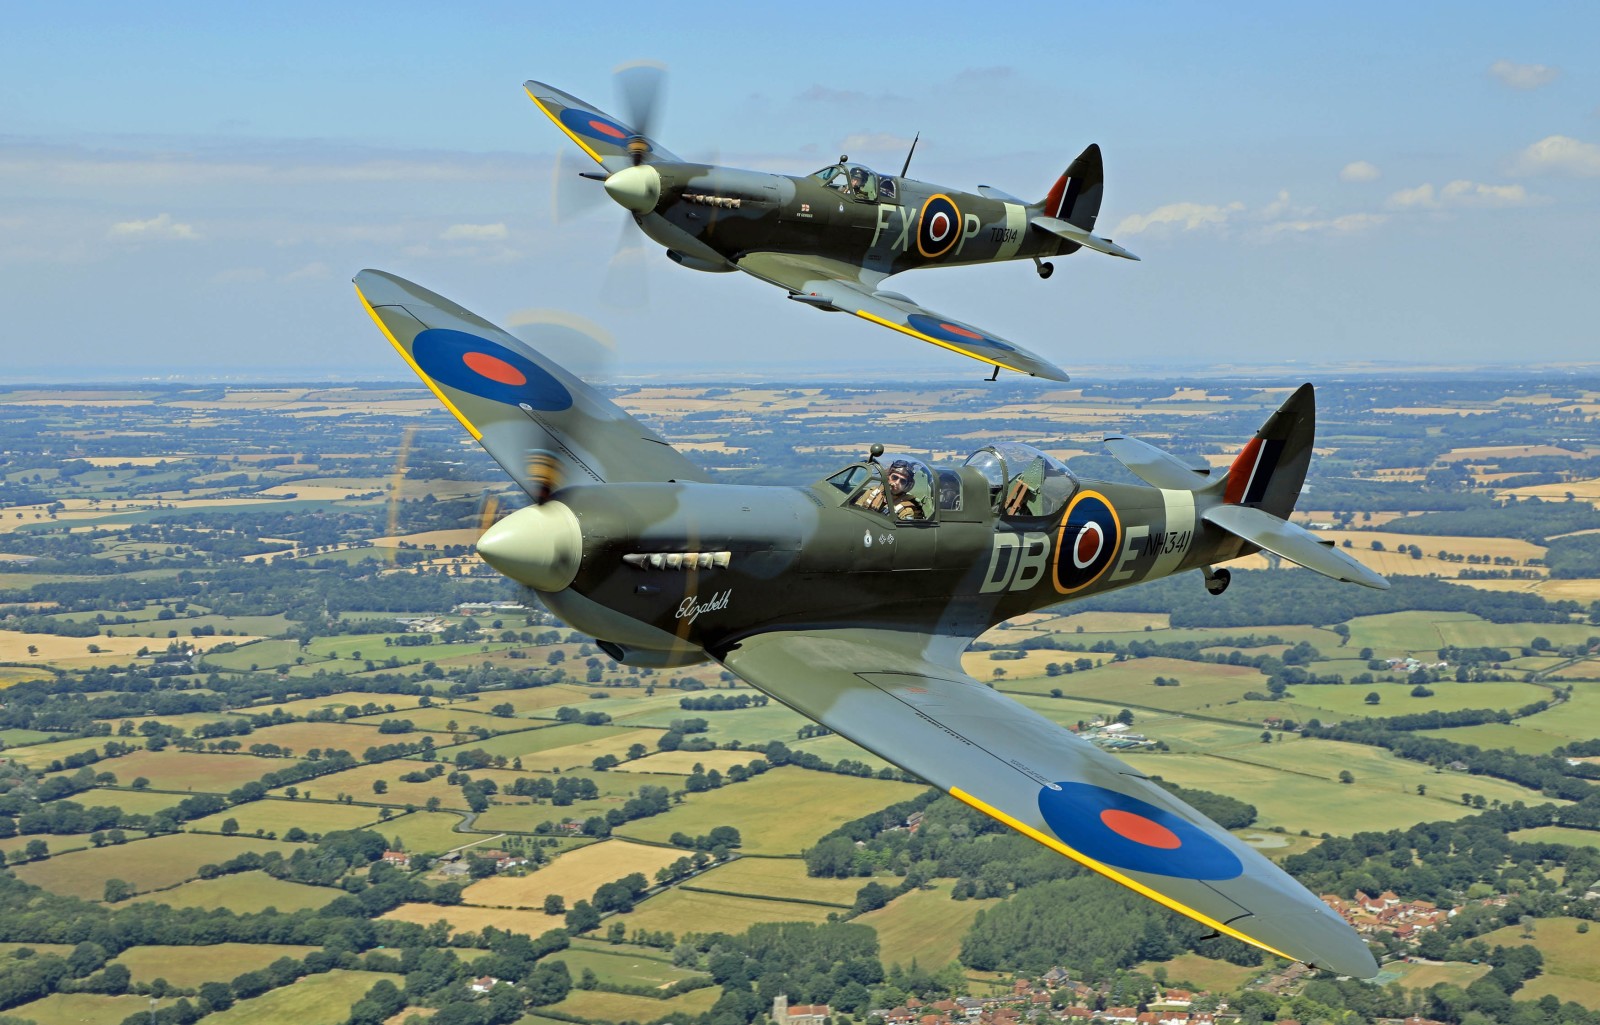 pasangan, Pejuang, Perang Dunia Kedua, Supermarine Spitfire, RAF, Pemarah